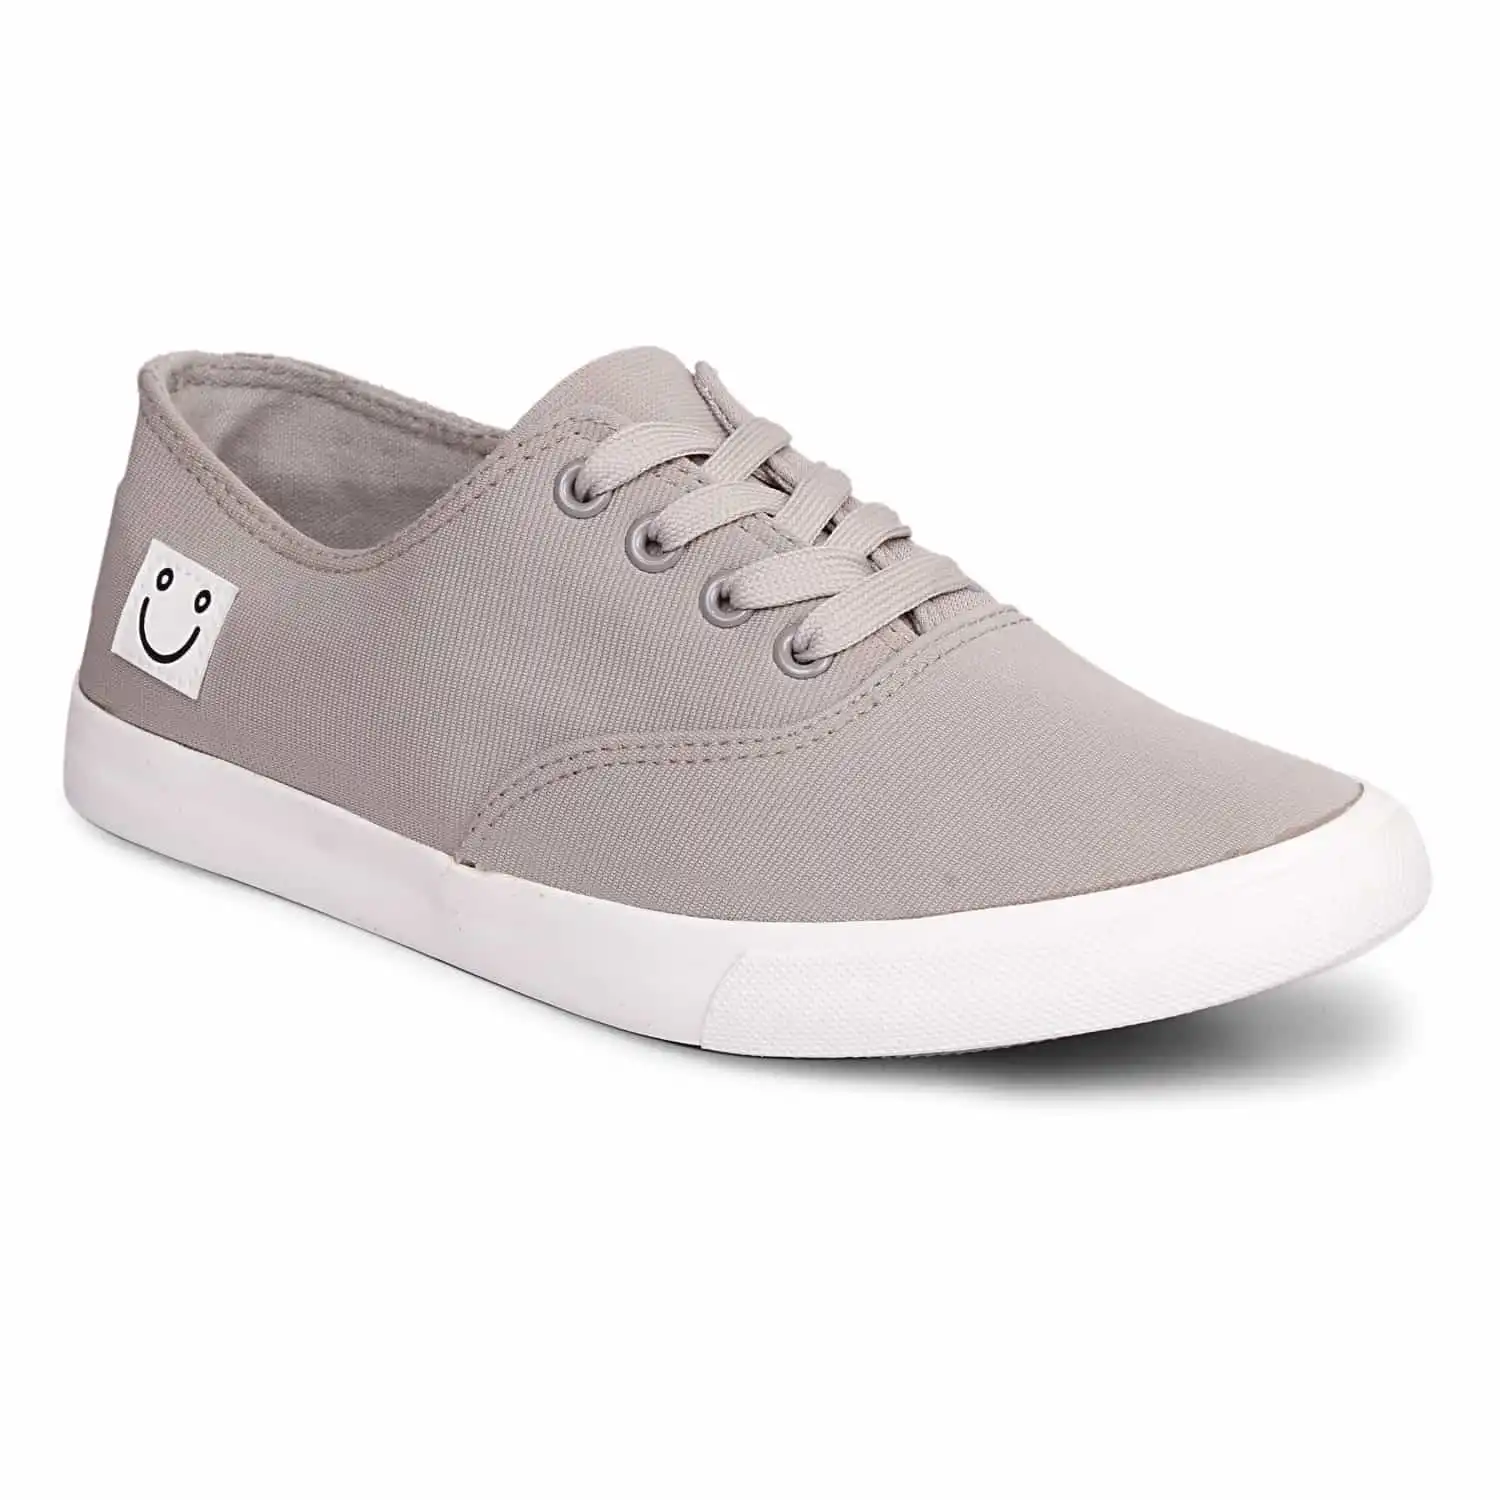 Buy Men Blue Casual Sneakers Online | SKU: 71-8631-45-40-Metro Shoes